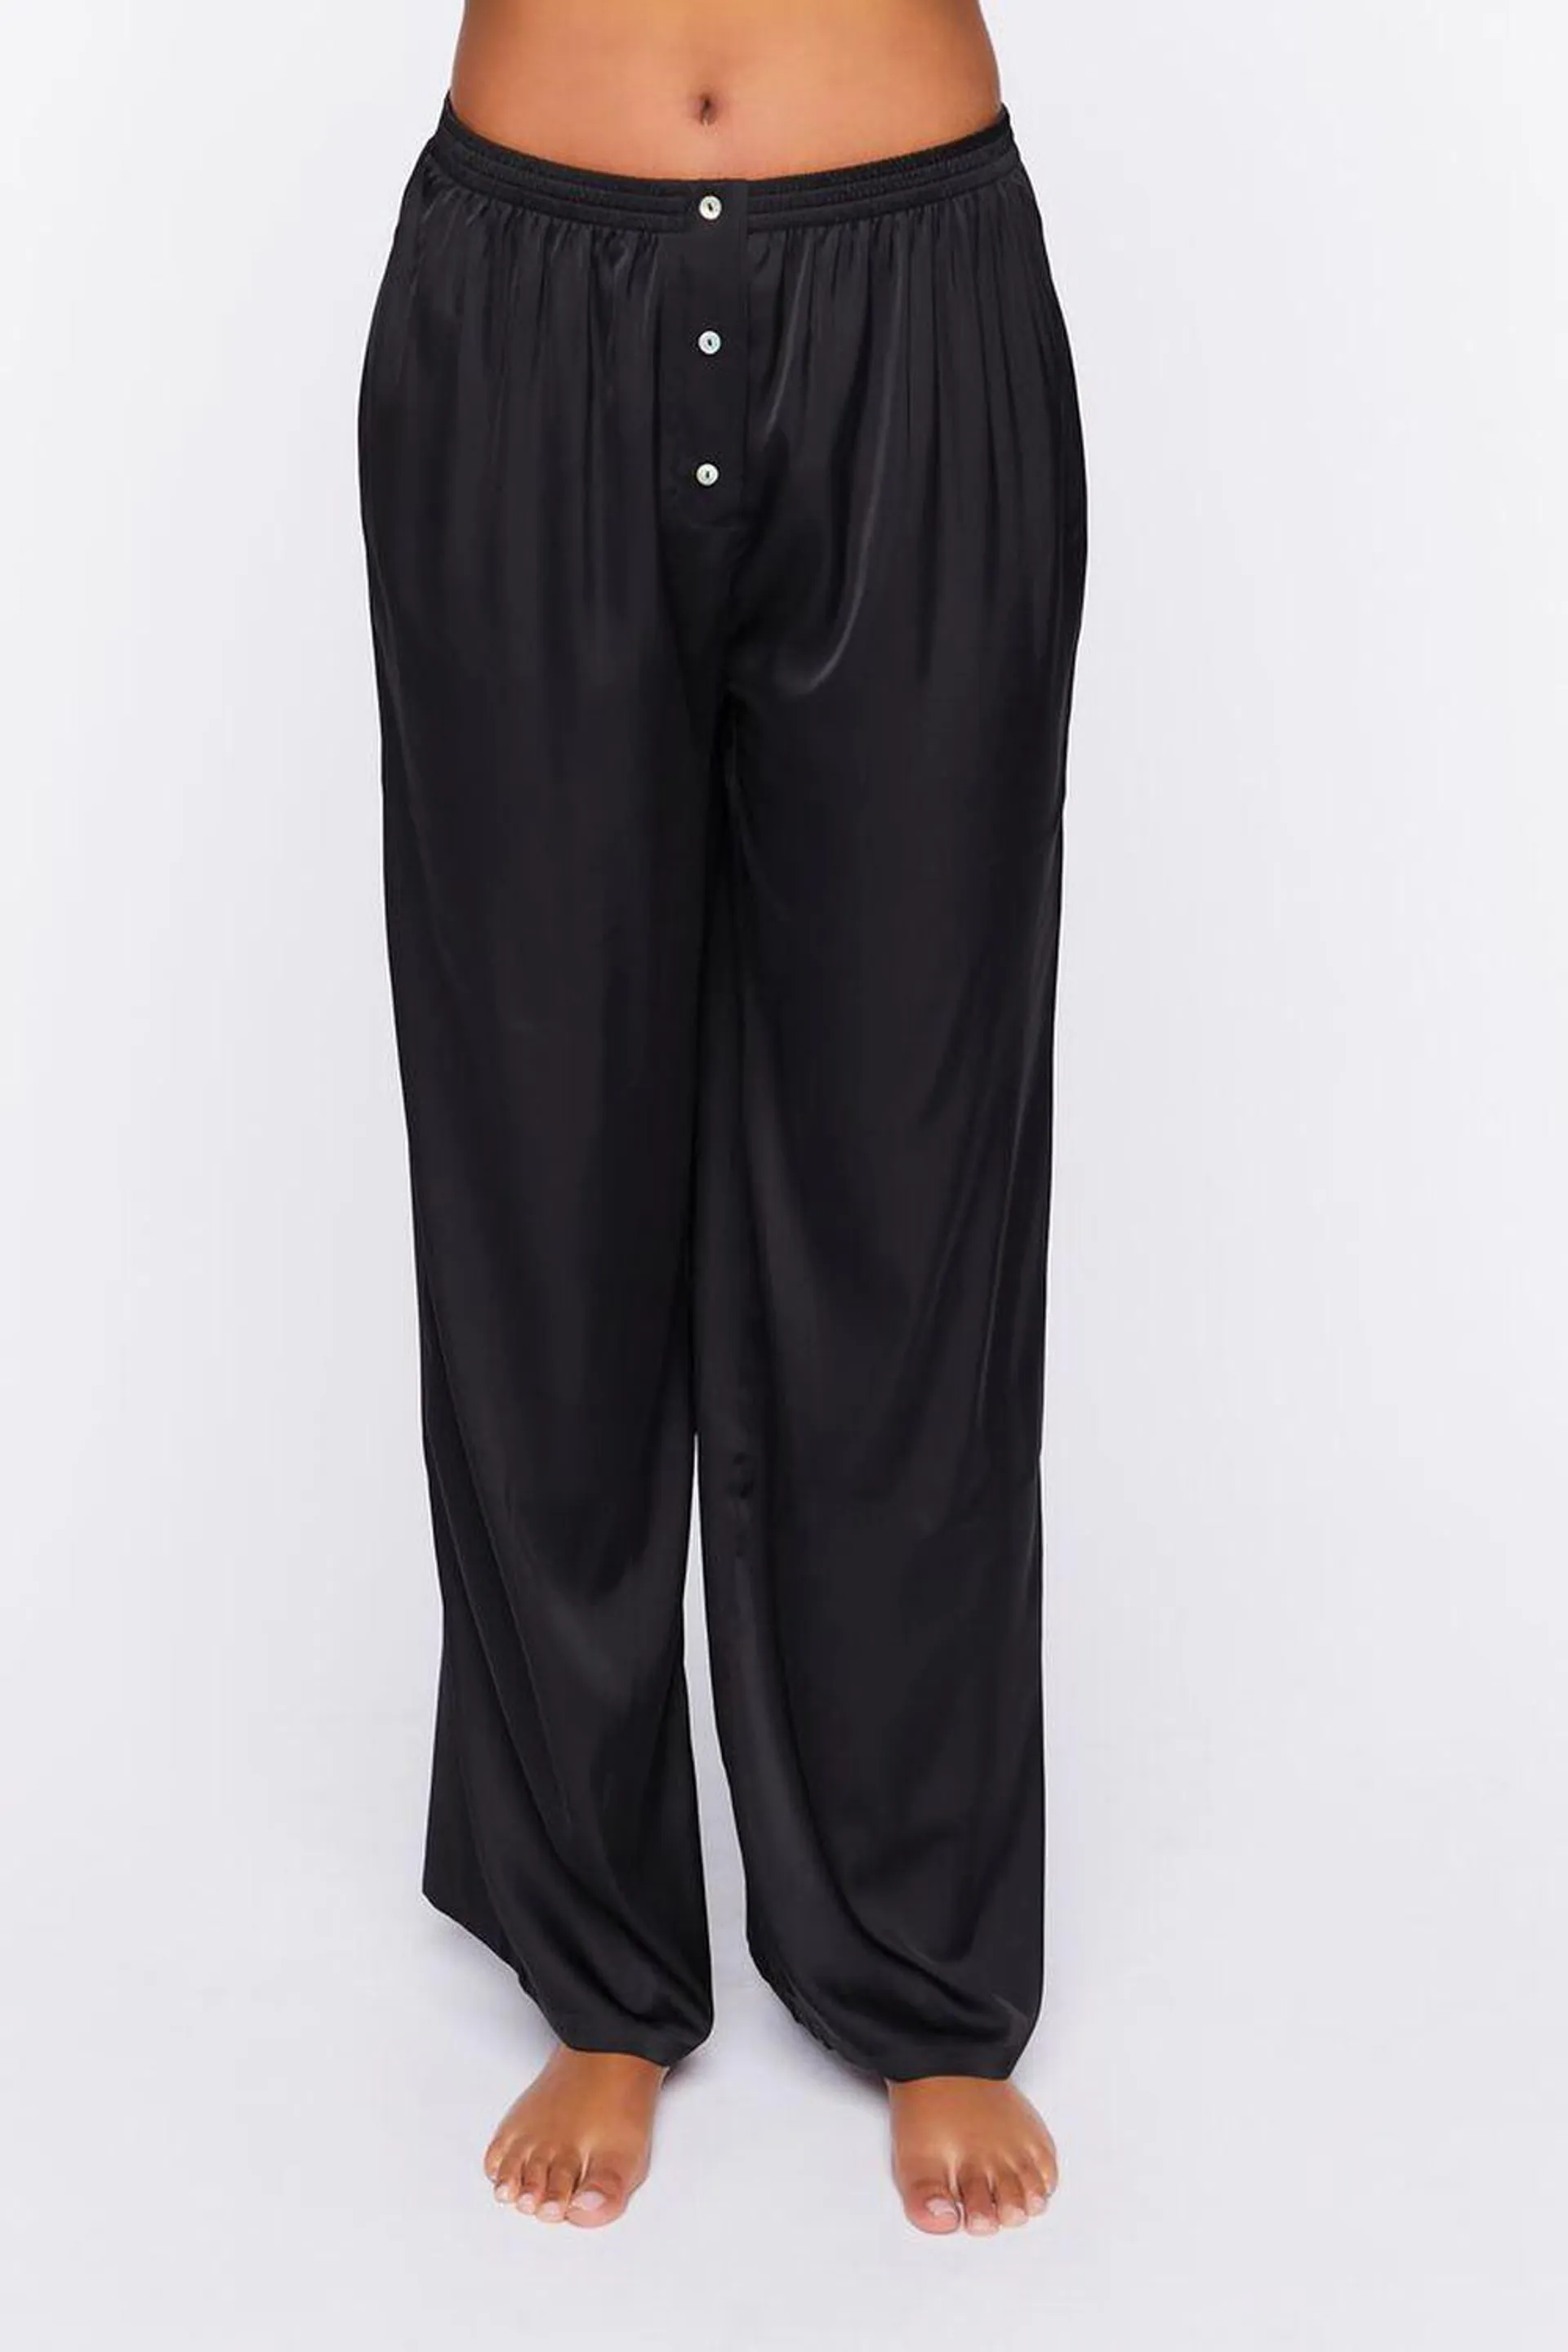 Pijamas Pantalón Mujer Black